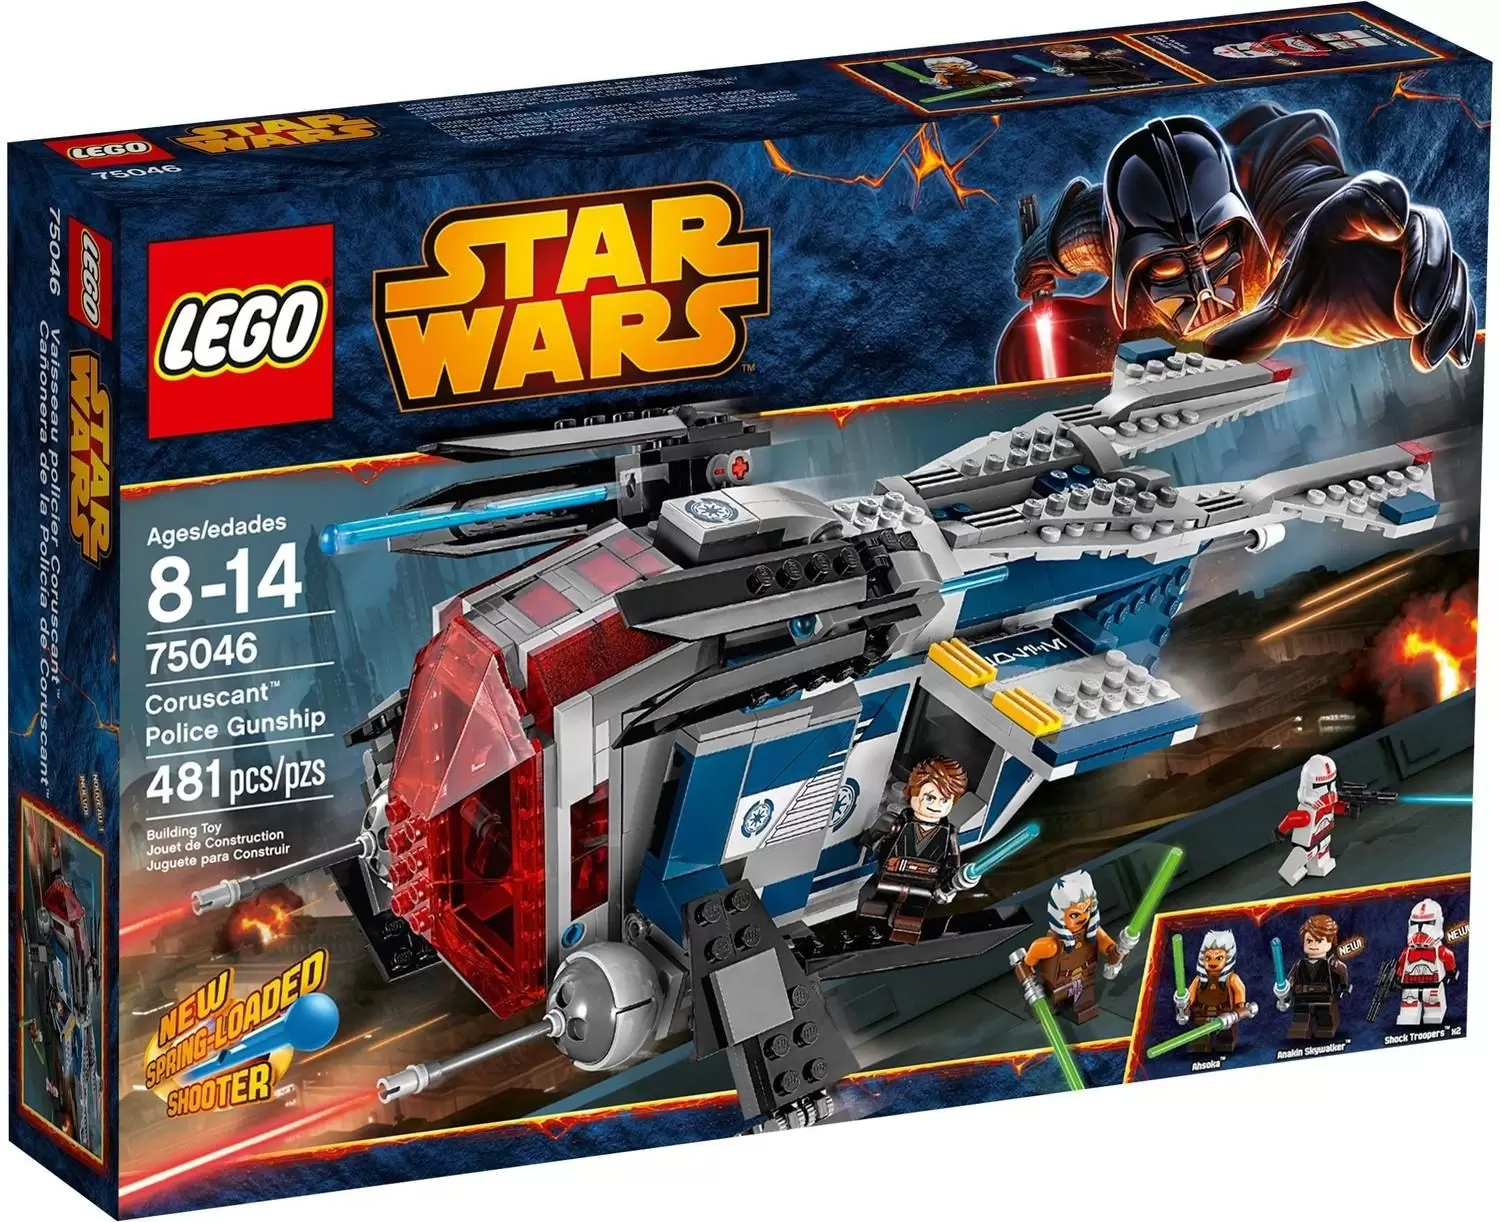 LEGO Star Wars - Coruscant Police Gunship